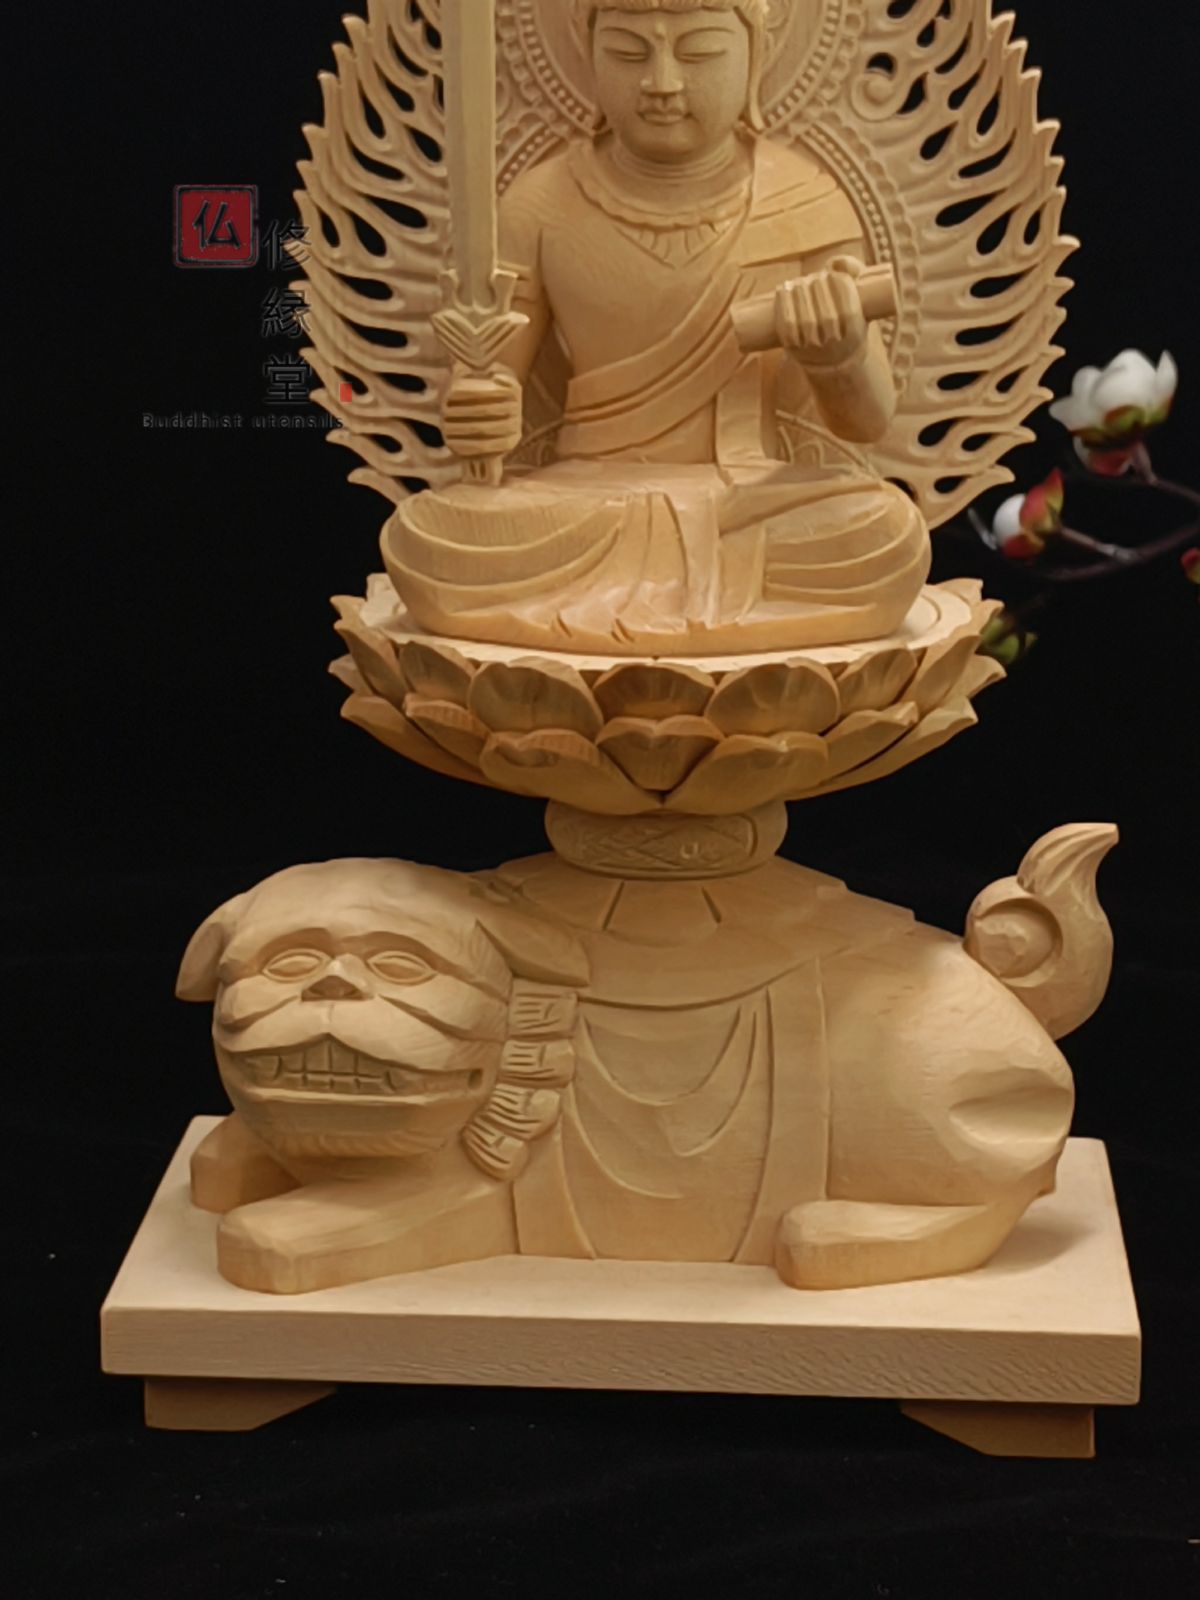 修縁堂】木彫り 仏像 文殊菩薩 普賢菩薩座像一式 総檜材 精密彫刻 仏教